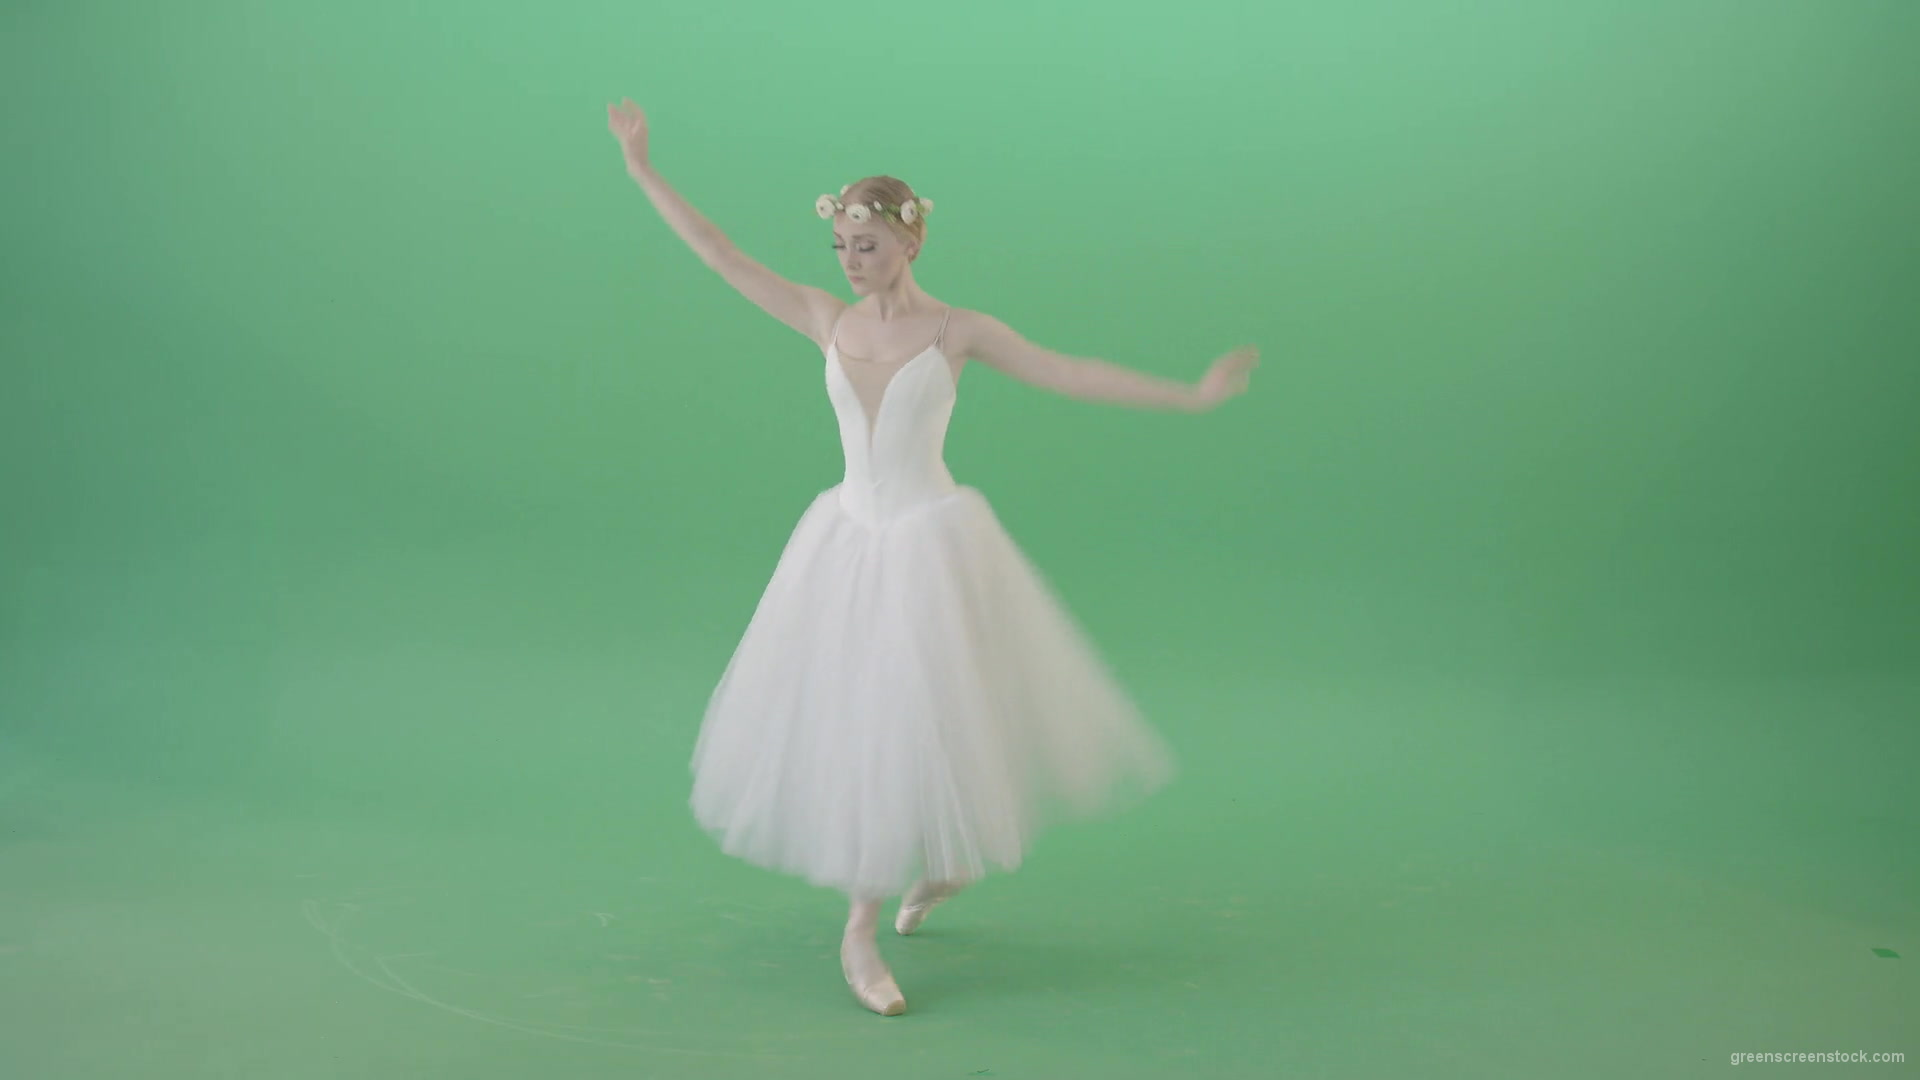 Elegant-Ballerina-Ballet-Girl-posing-for-Advertising-packshot-4K-Video-Footage-1920_007 Green Screen Stock